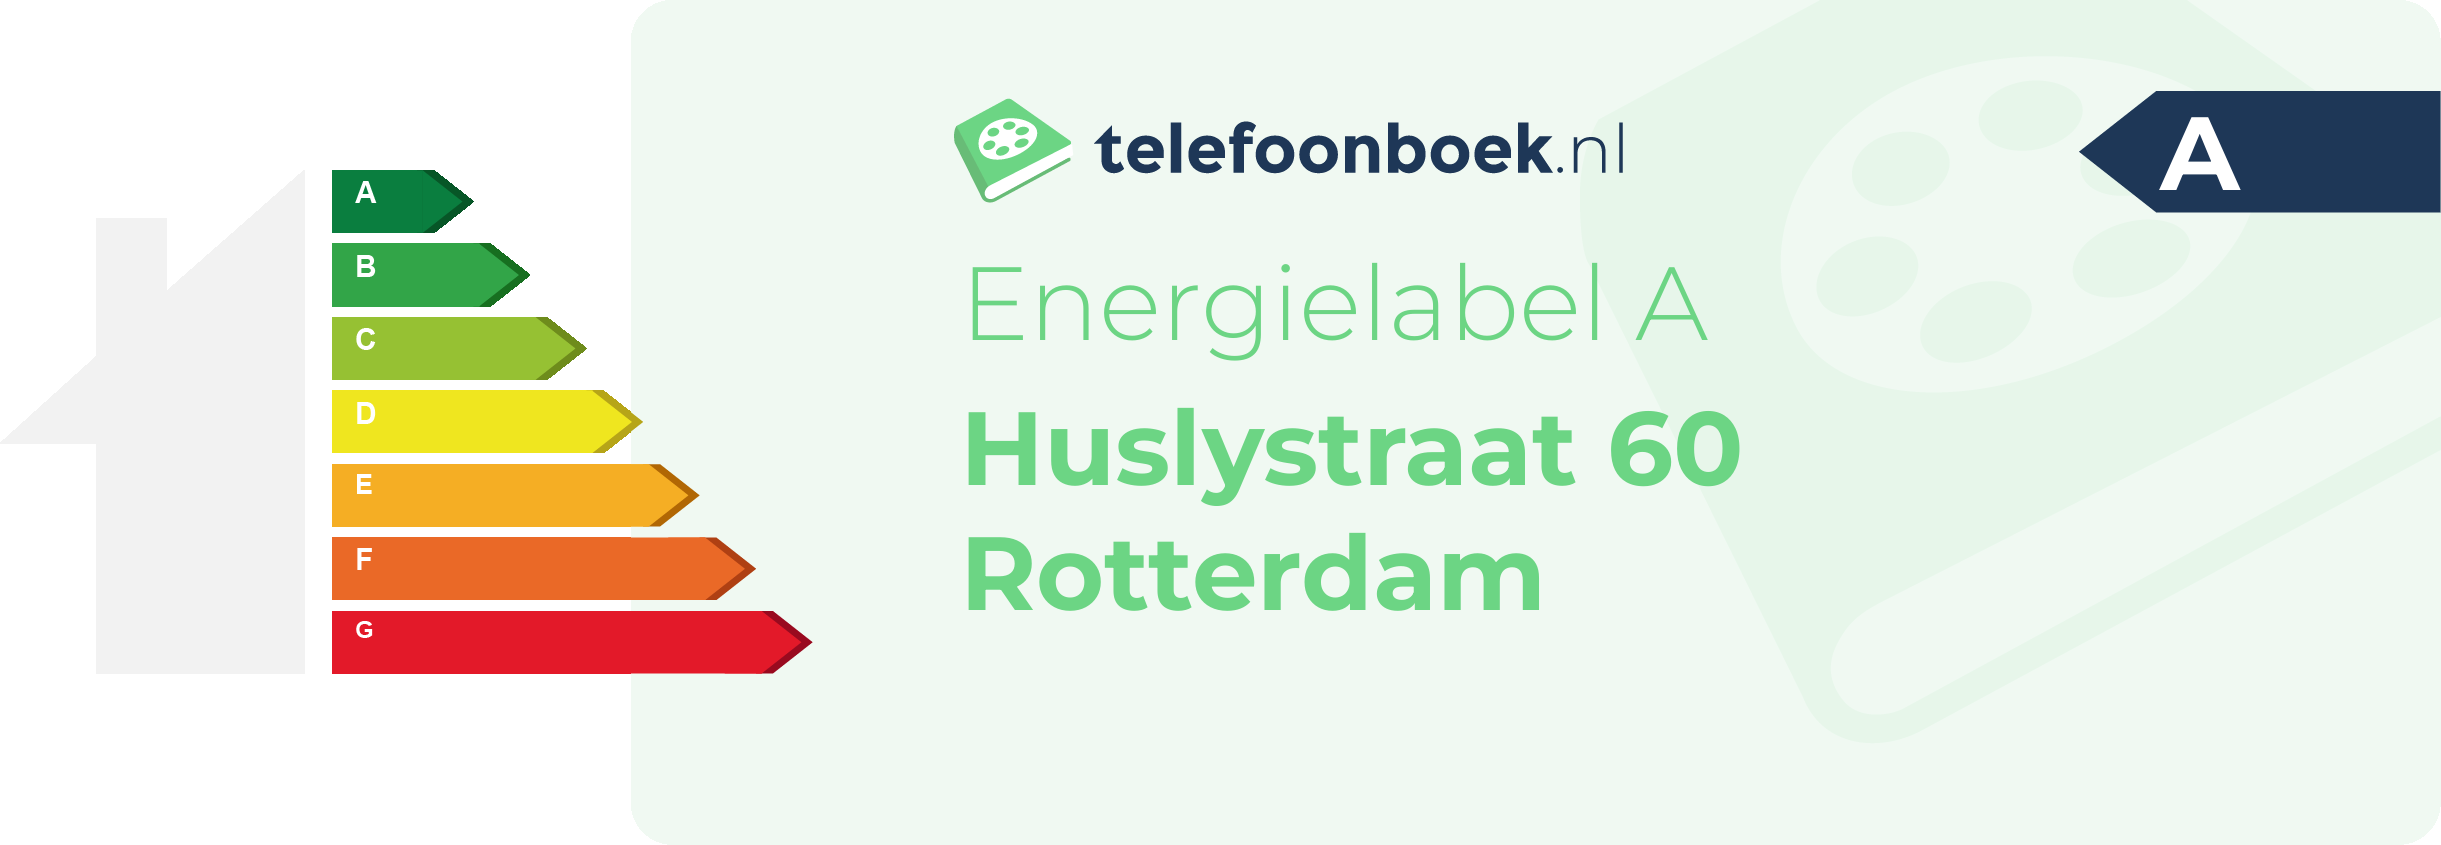 Energielabel Huslystraat 60 Rotterdam